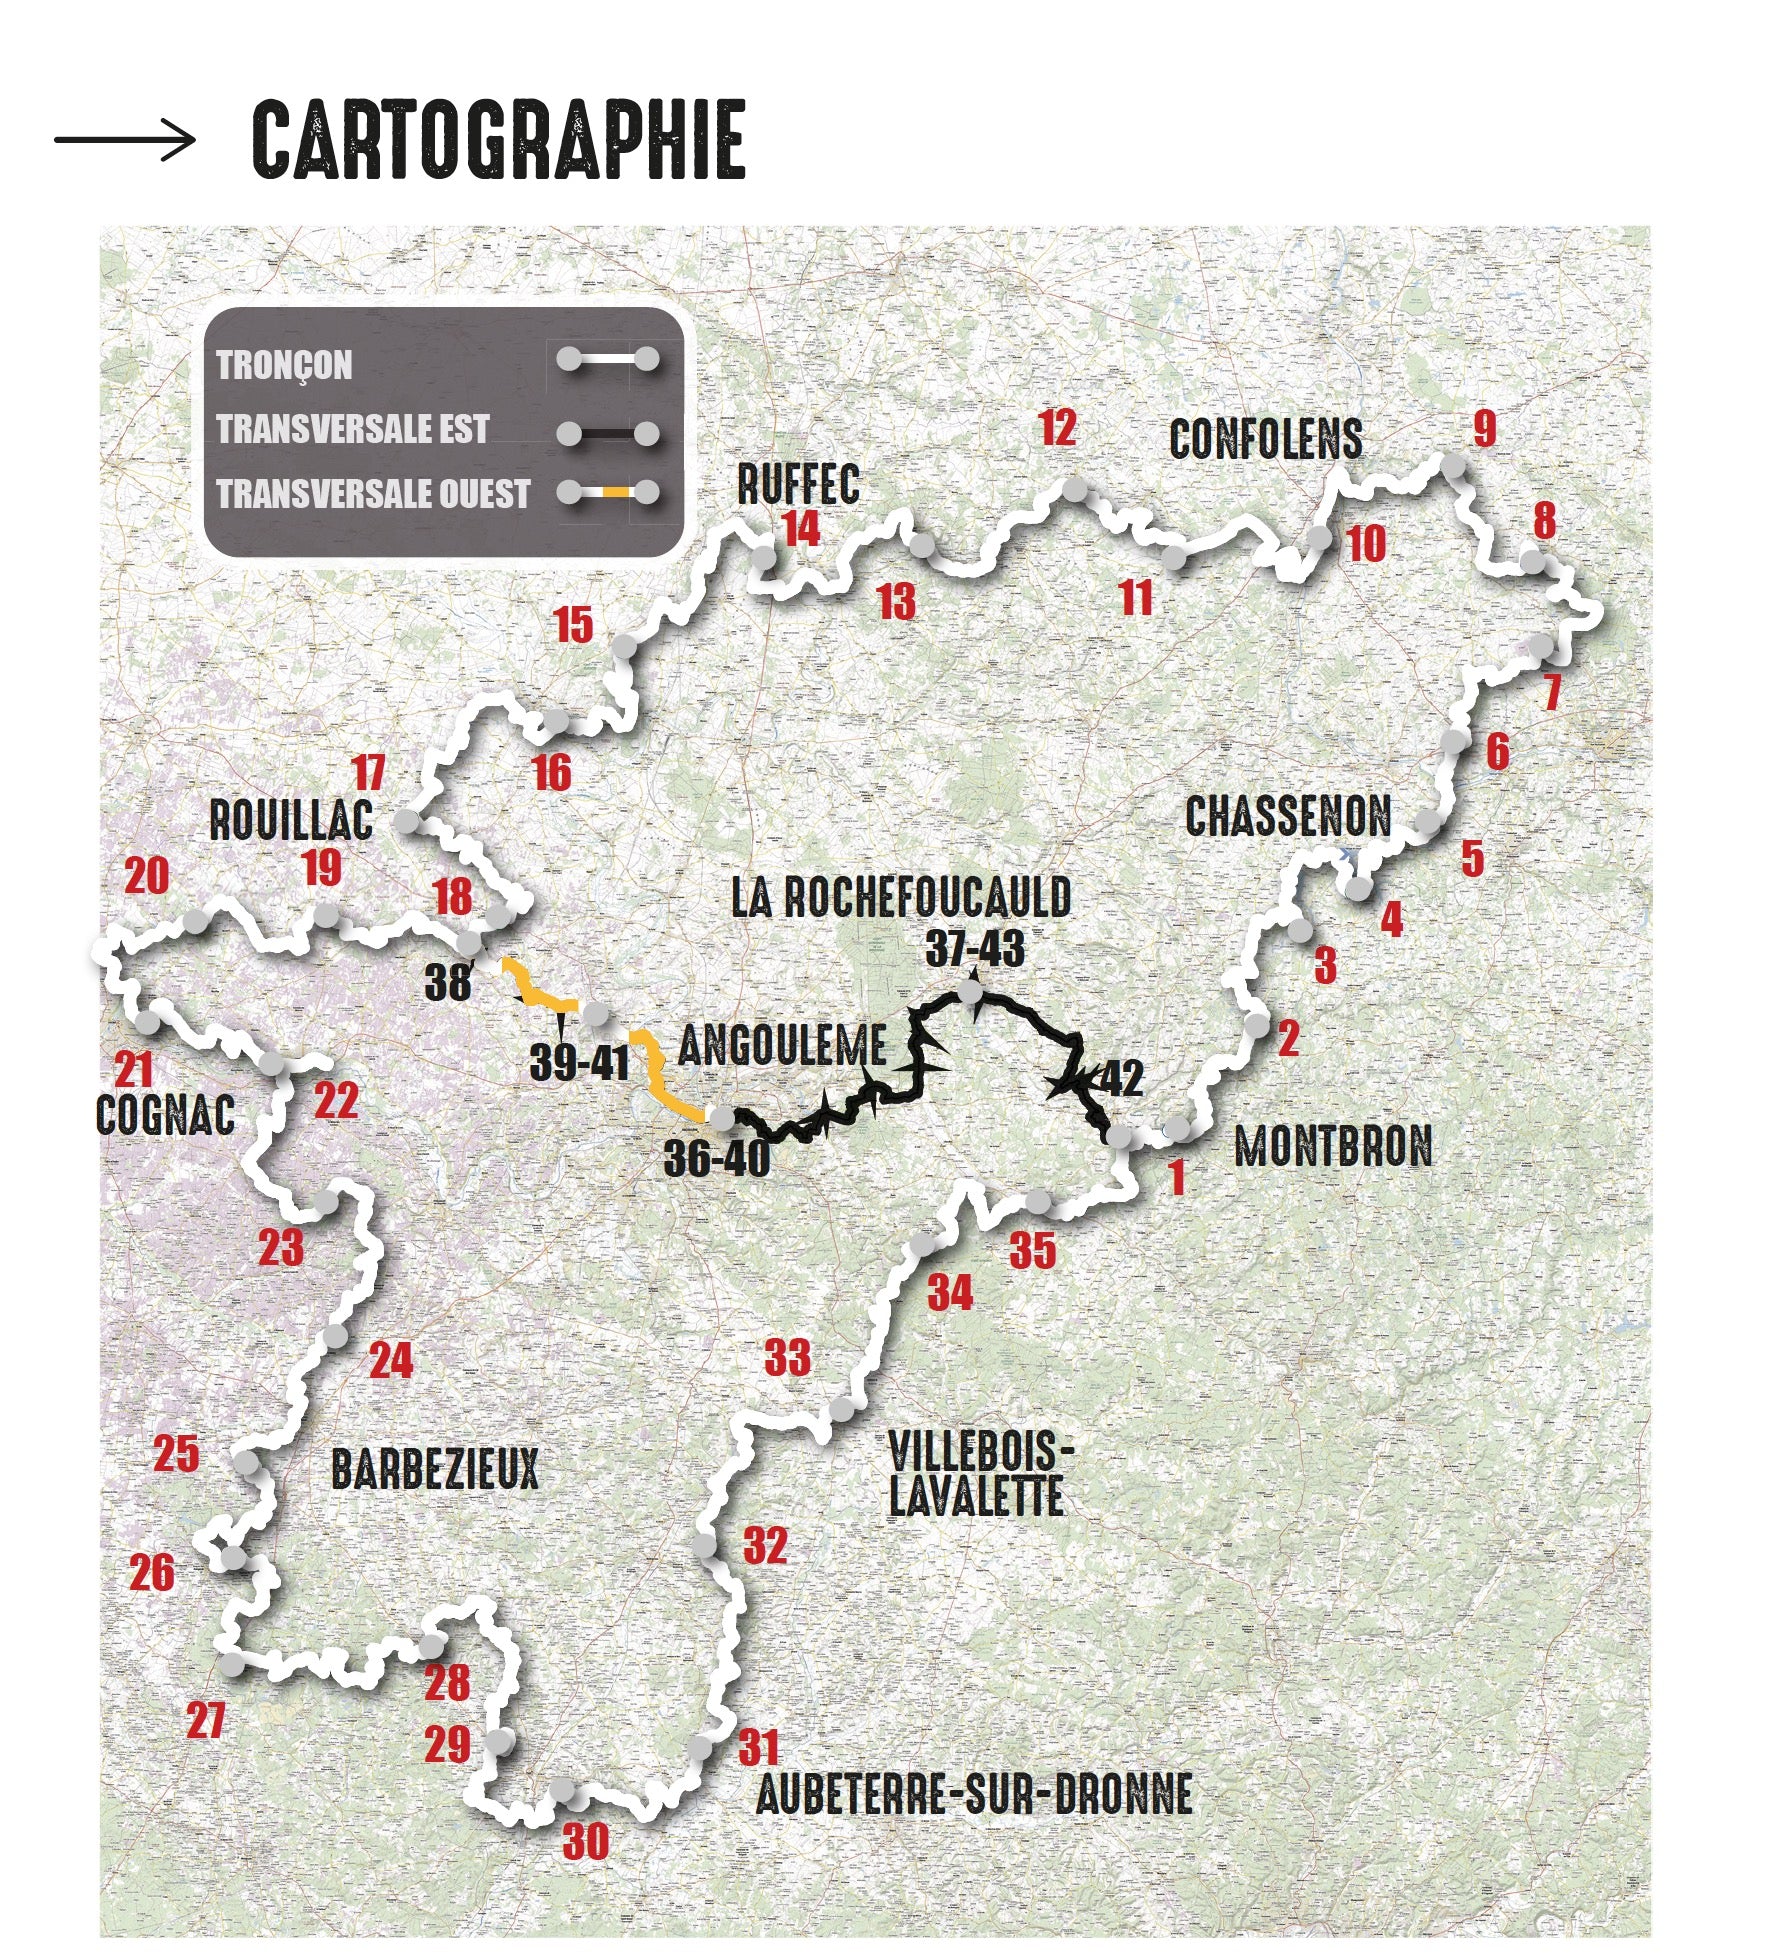 VTOPO VTT Itinérance Tour de la Charente